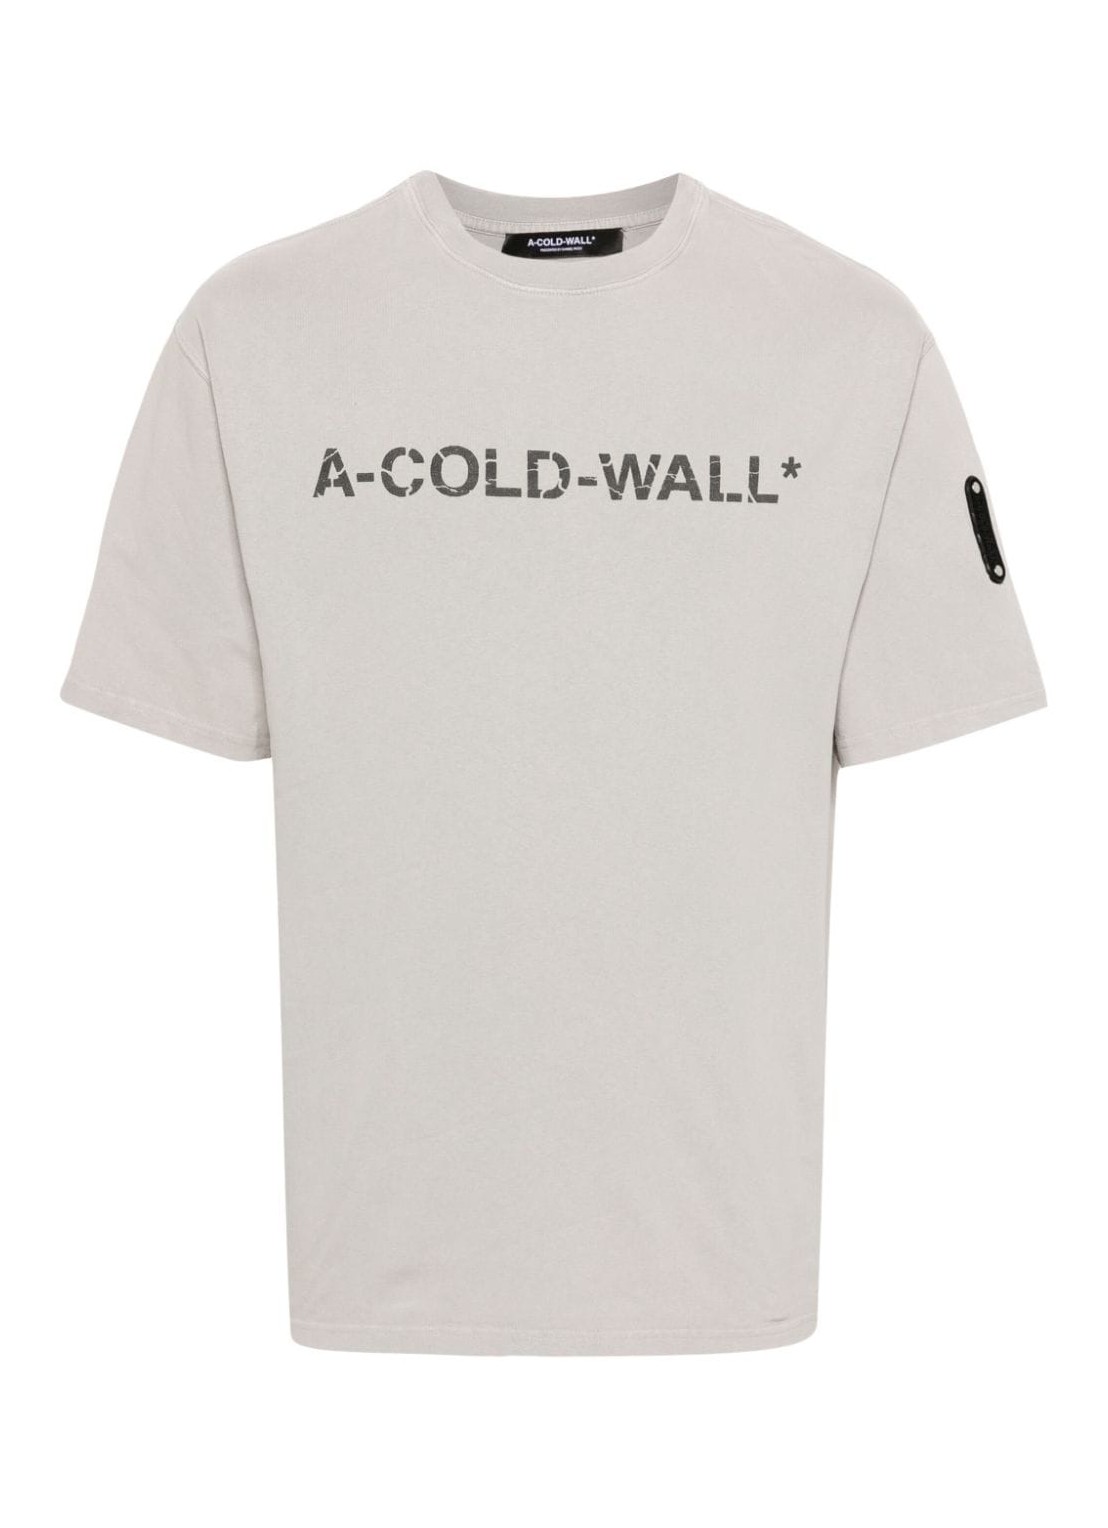 Camiseta a-cold-wall* t-shirt man overdye logo t-shirt acwmts186 cement cemt talla gris
 